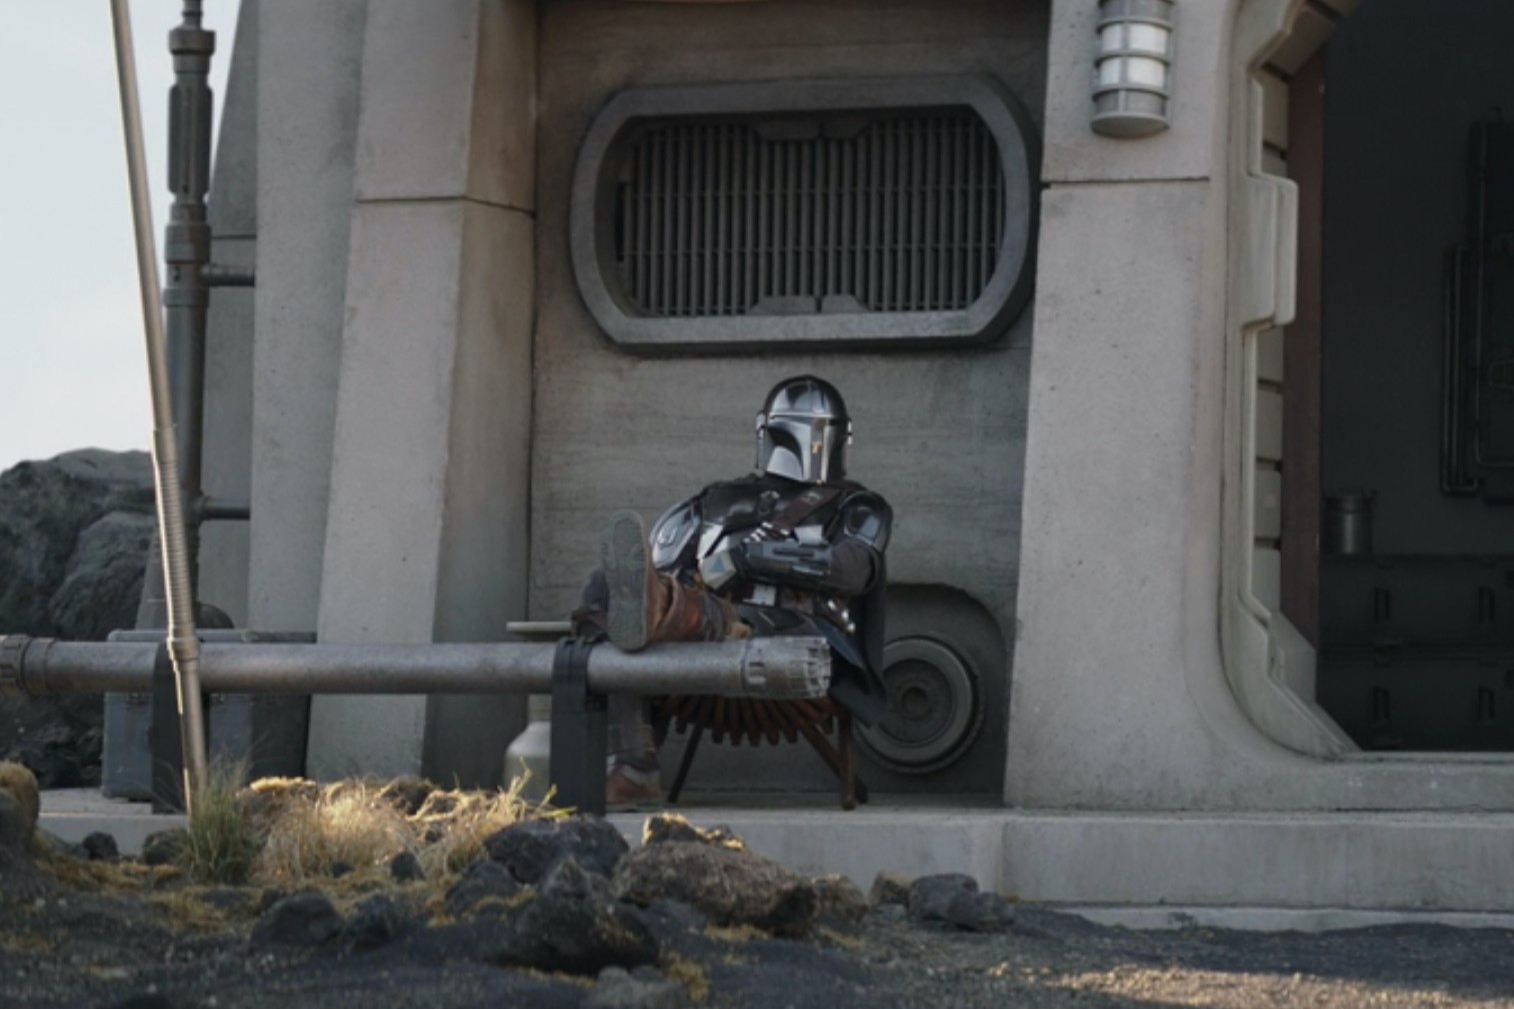 Din Djarin relaxa do lado de fora de sua casa em Nevarro no final da terceira temporada de The Mandalorian.